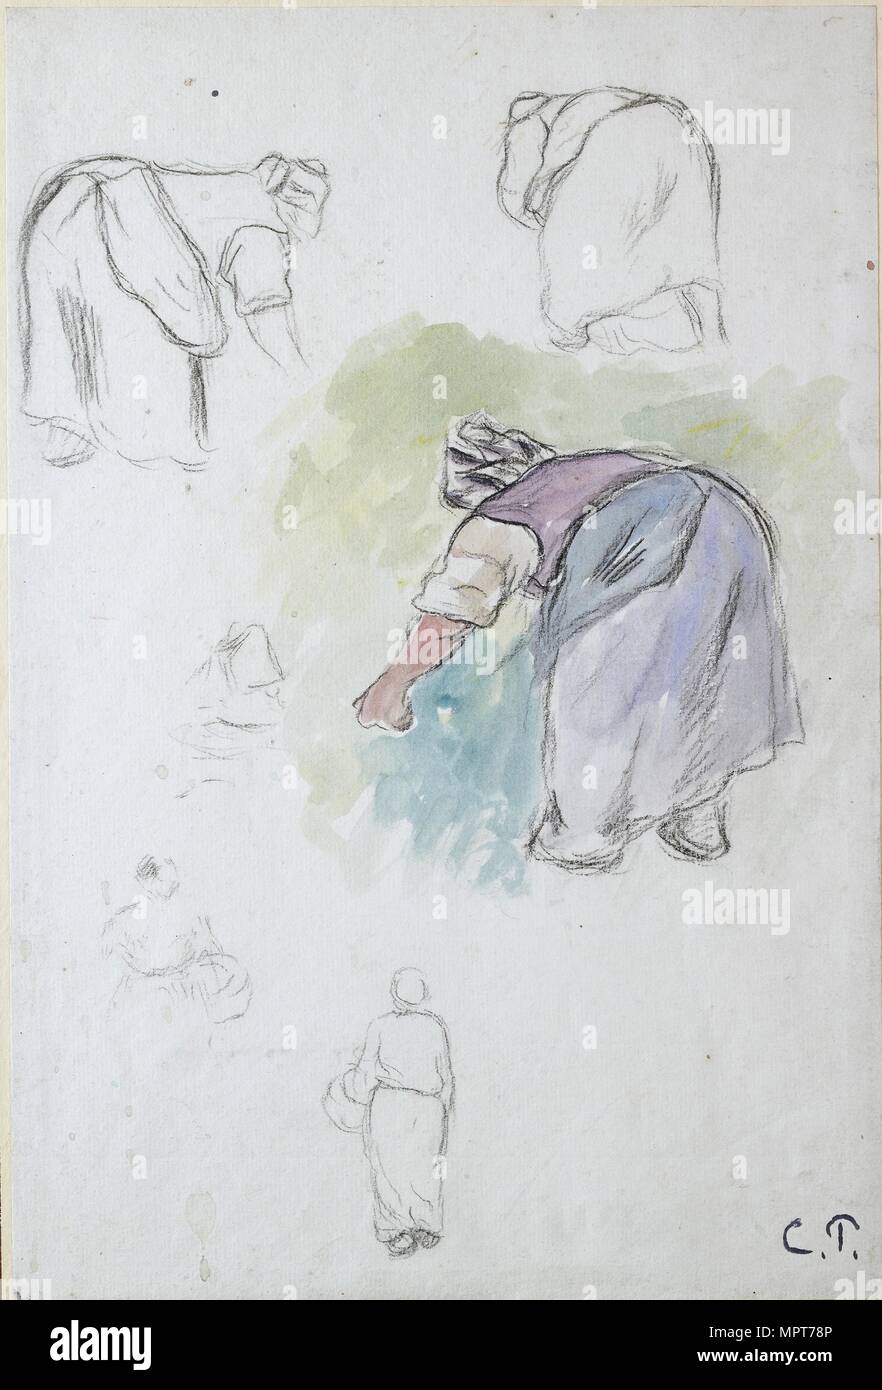 Feuille d'études : quatre études d'une paysanne femelle, et deux études d'une femme tenant un bas Artiste : Camille Pissarro. Banque D'Images